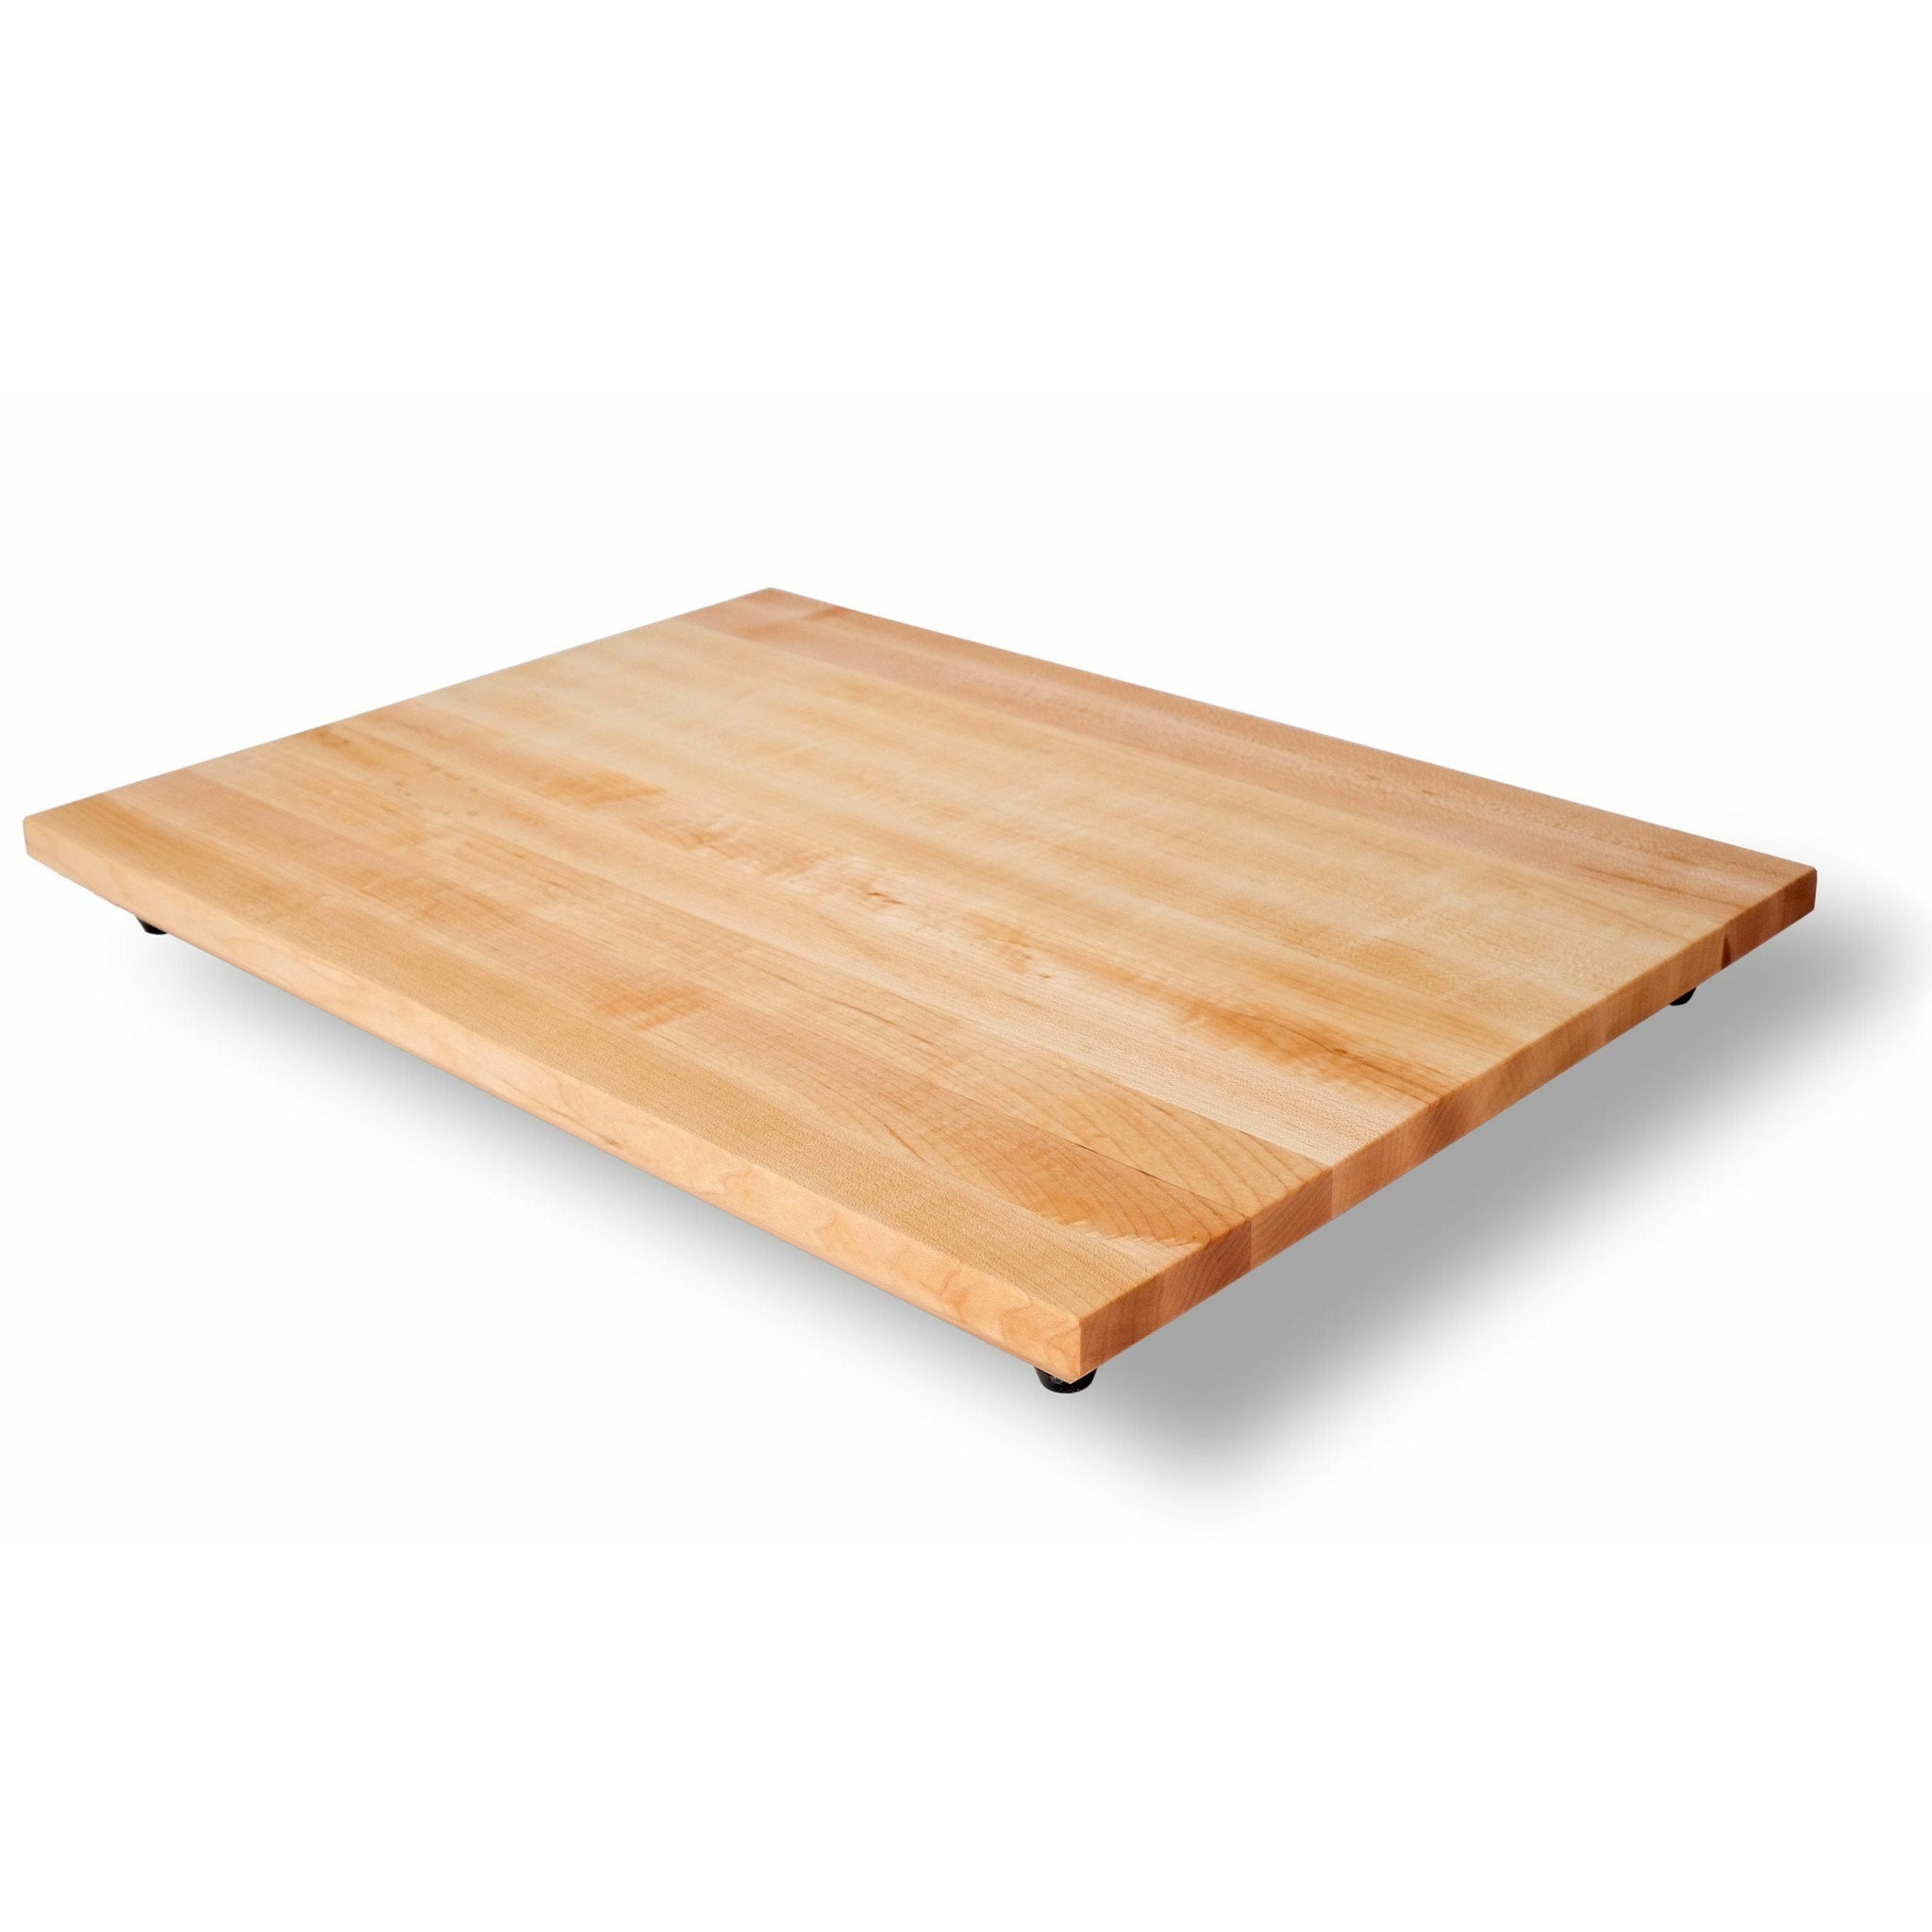 https://steelmadeusa.com/cdn/shop/products/cutting-boards-cutting-board-steelmade-maple-229359_2048x.jpg?v=1655247164